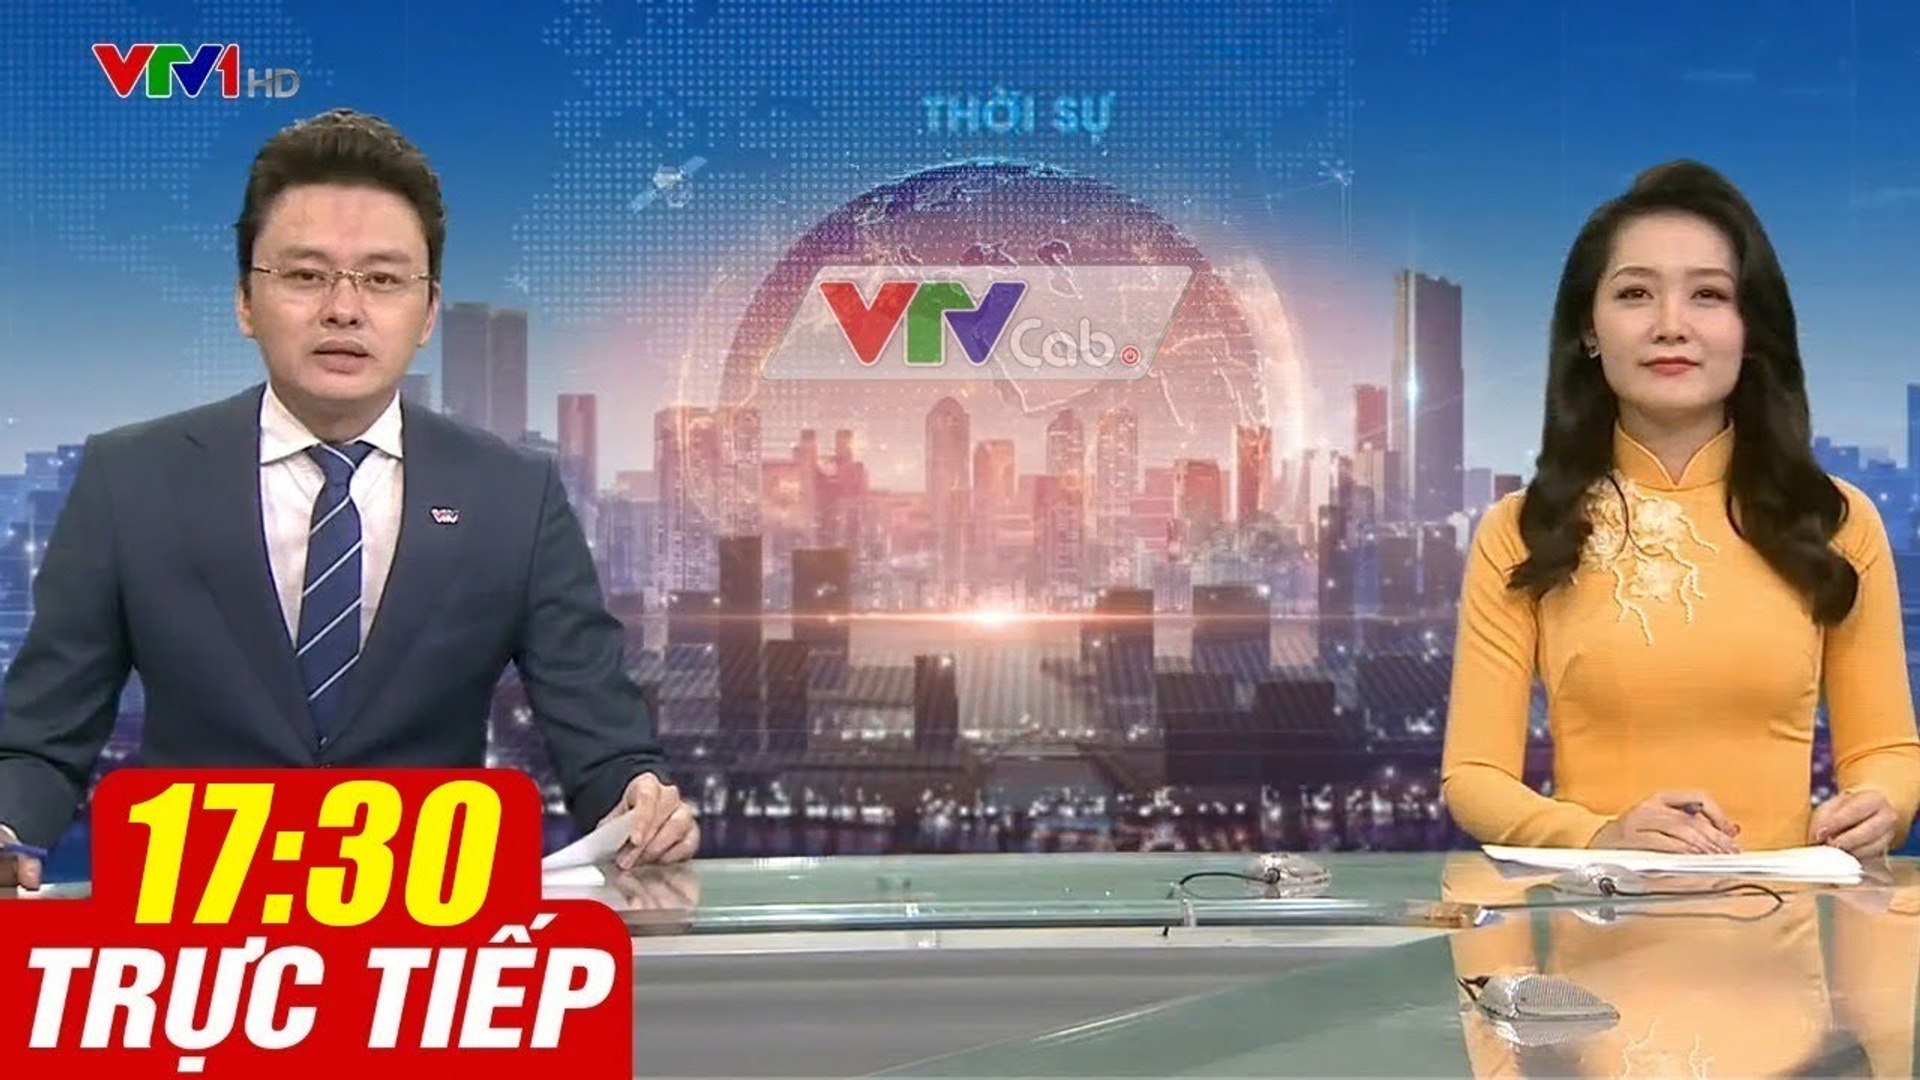 Trực Tiếp VIỆT NAM HÔM NAY 17h30 ngày 19.09.2020  Tin tức thời sự VTV1 mới nhất hôm nay